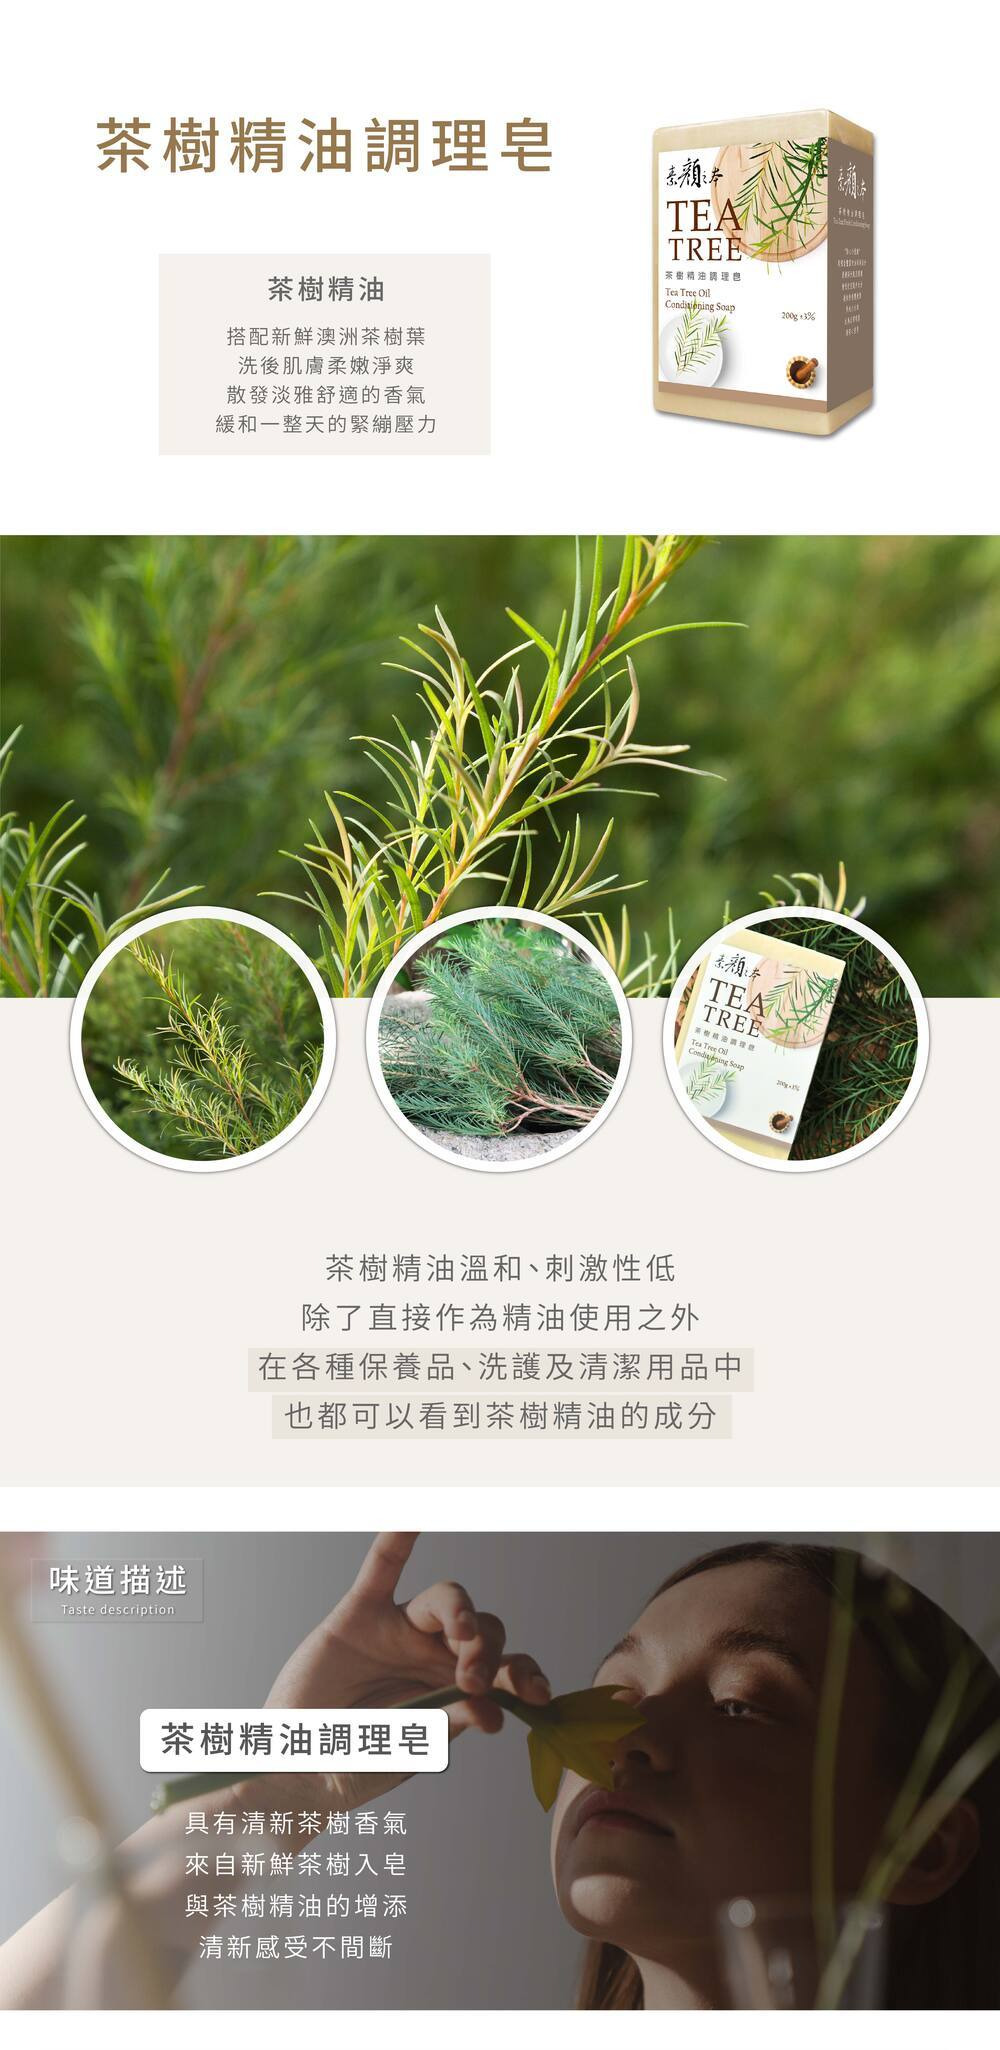 茶樹皂主要成份茶樹精油茶樹葉薏仁萃取與其他